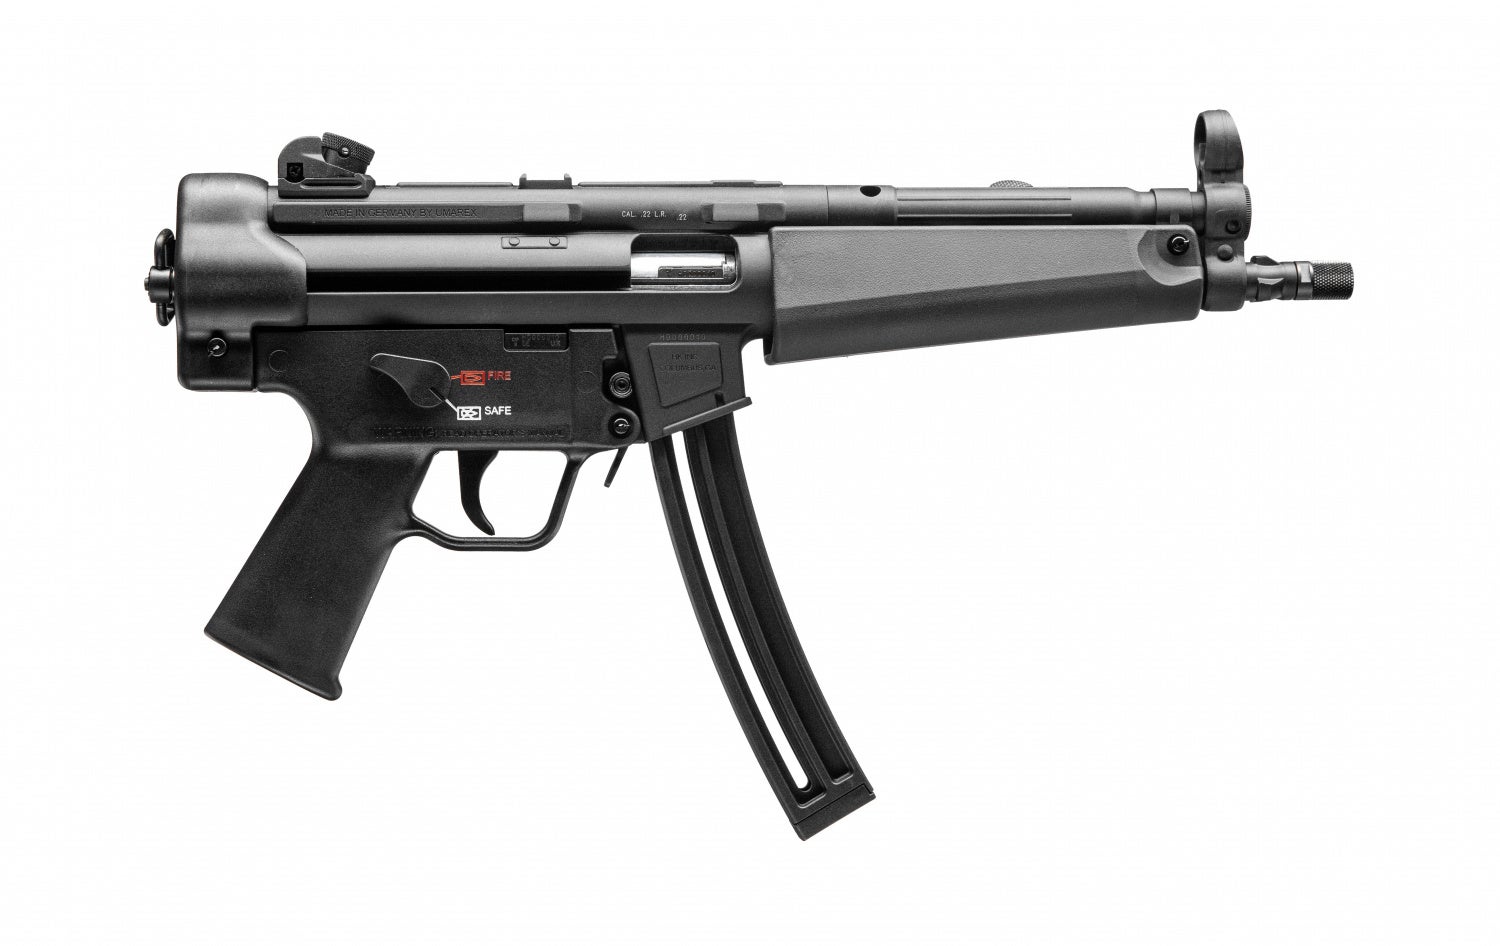 Heckler & Koch Adds Rimfire MP5 Models